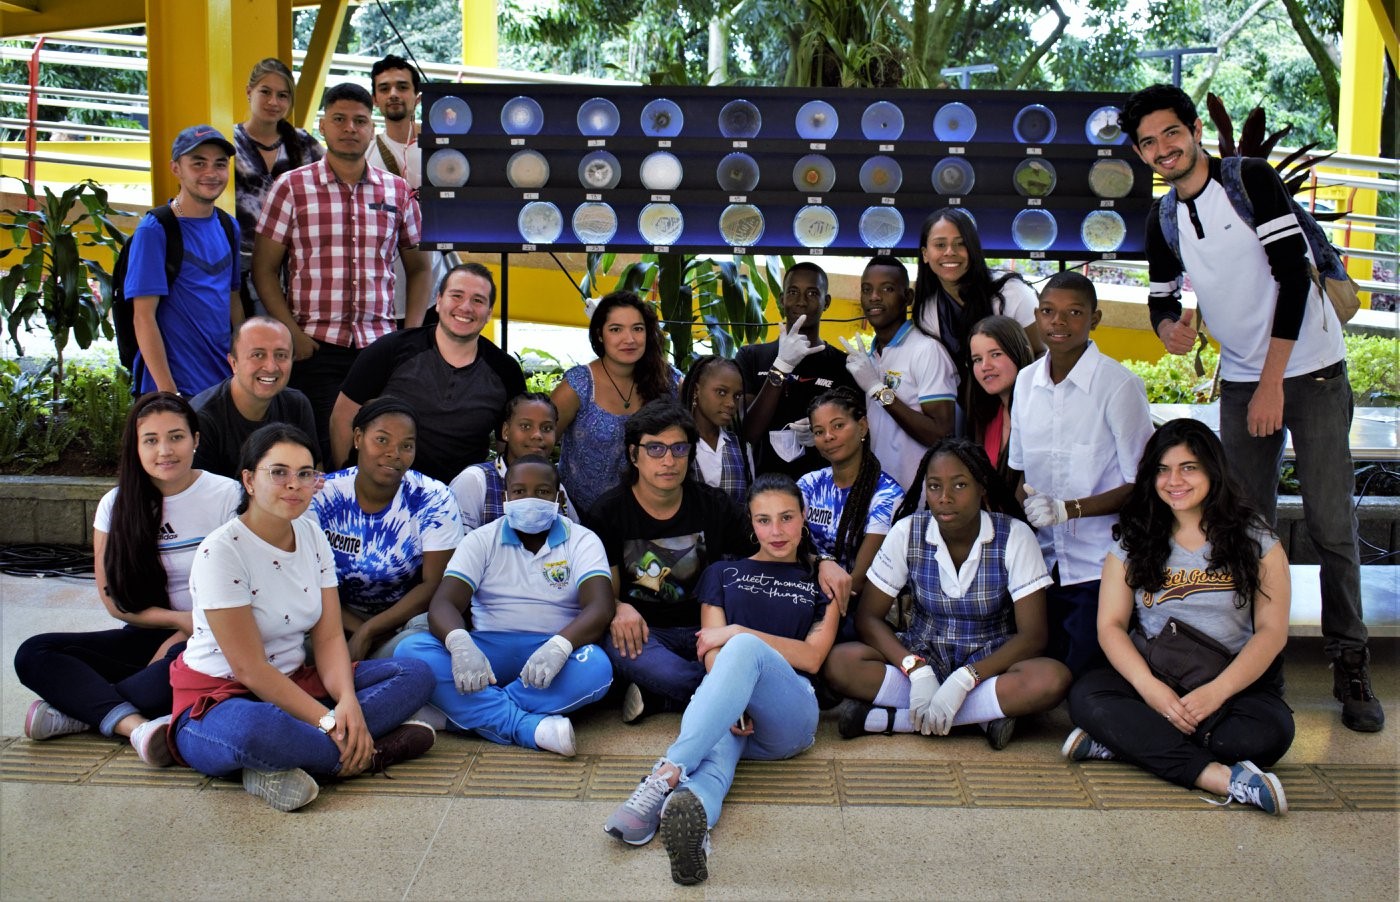 Comunidad Afro: “Bocas del Atrato - Urabá” participaron en la segunda exposición microbiana: Los Microbios del Poli - “Ellos están aquí”